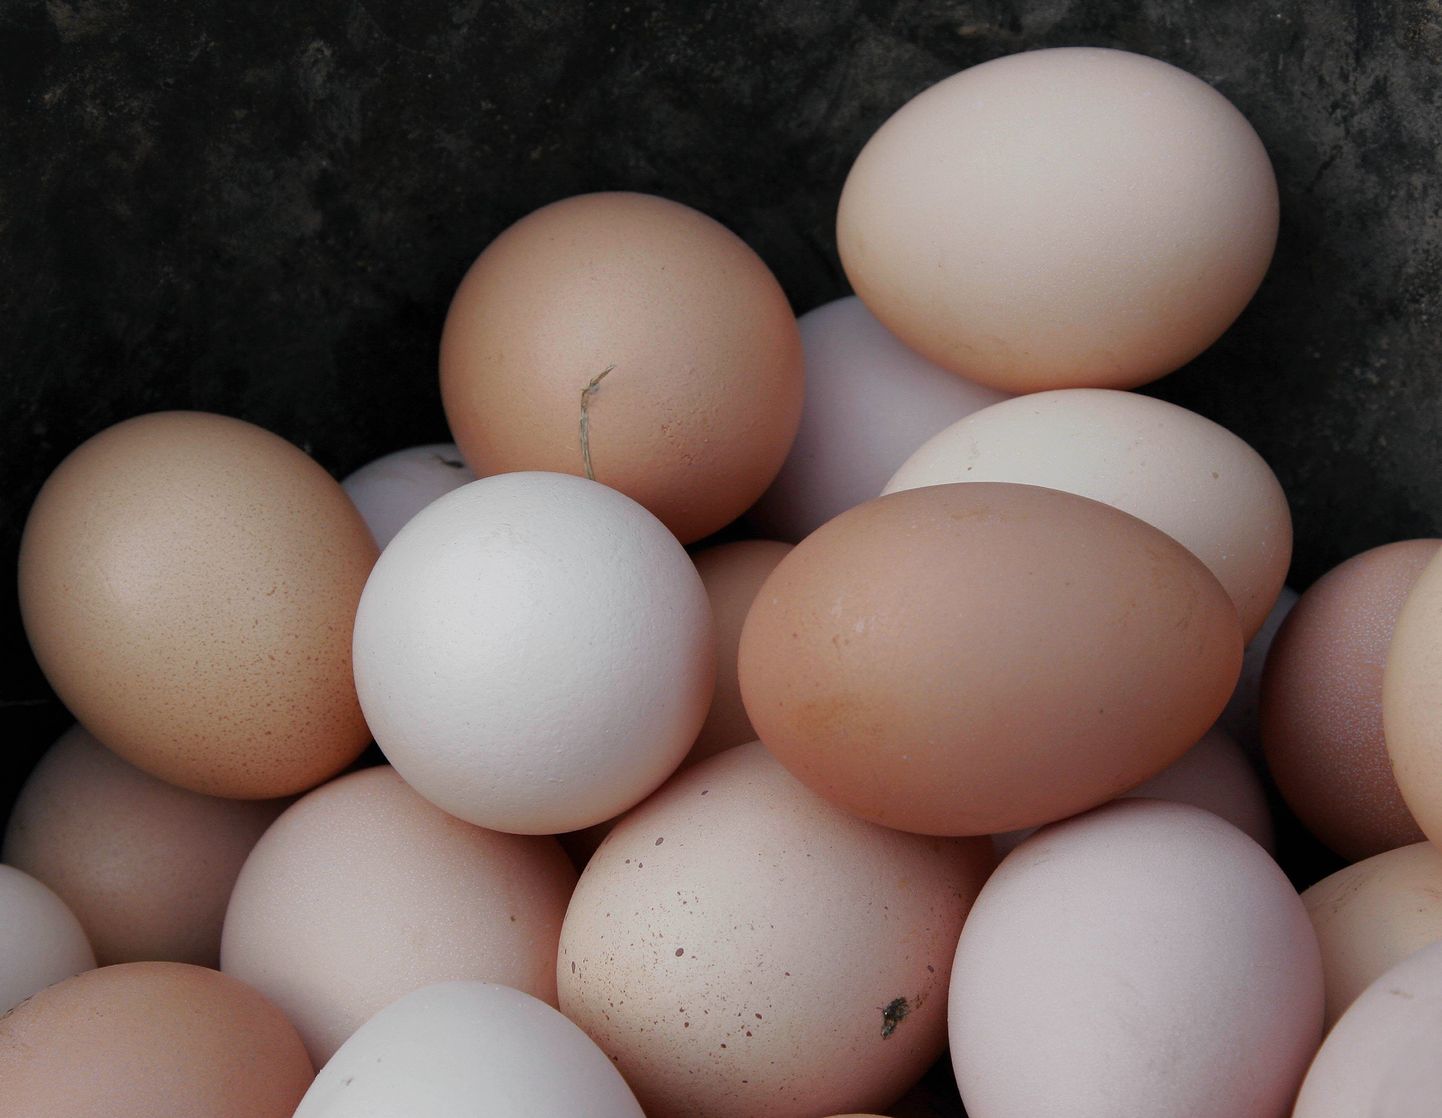 Lihavõtted ärgitavad valgeid mune ostma.